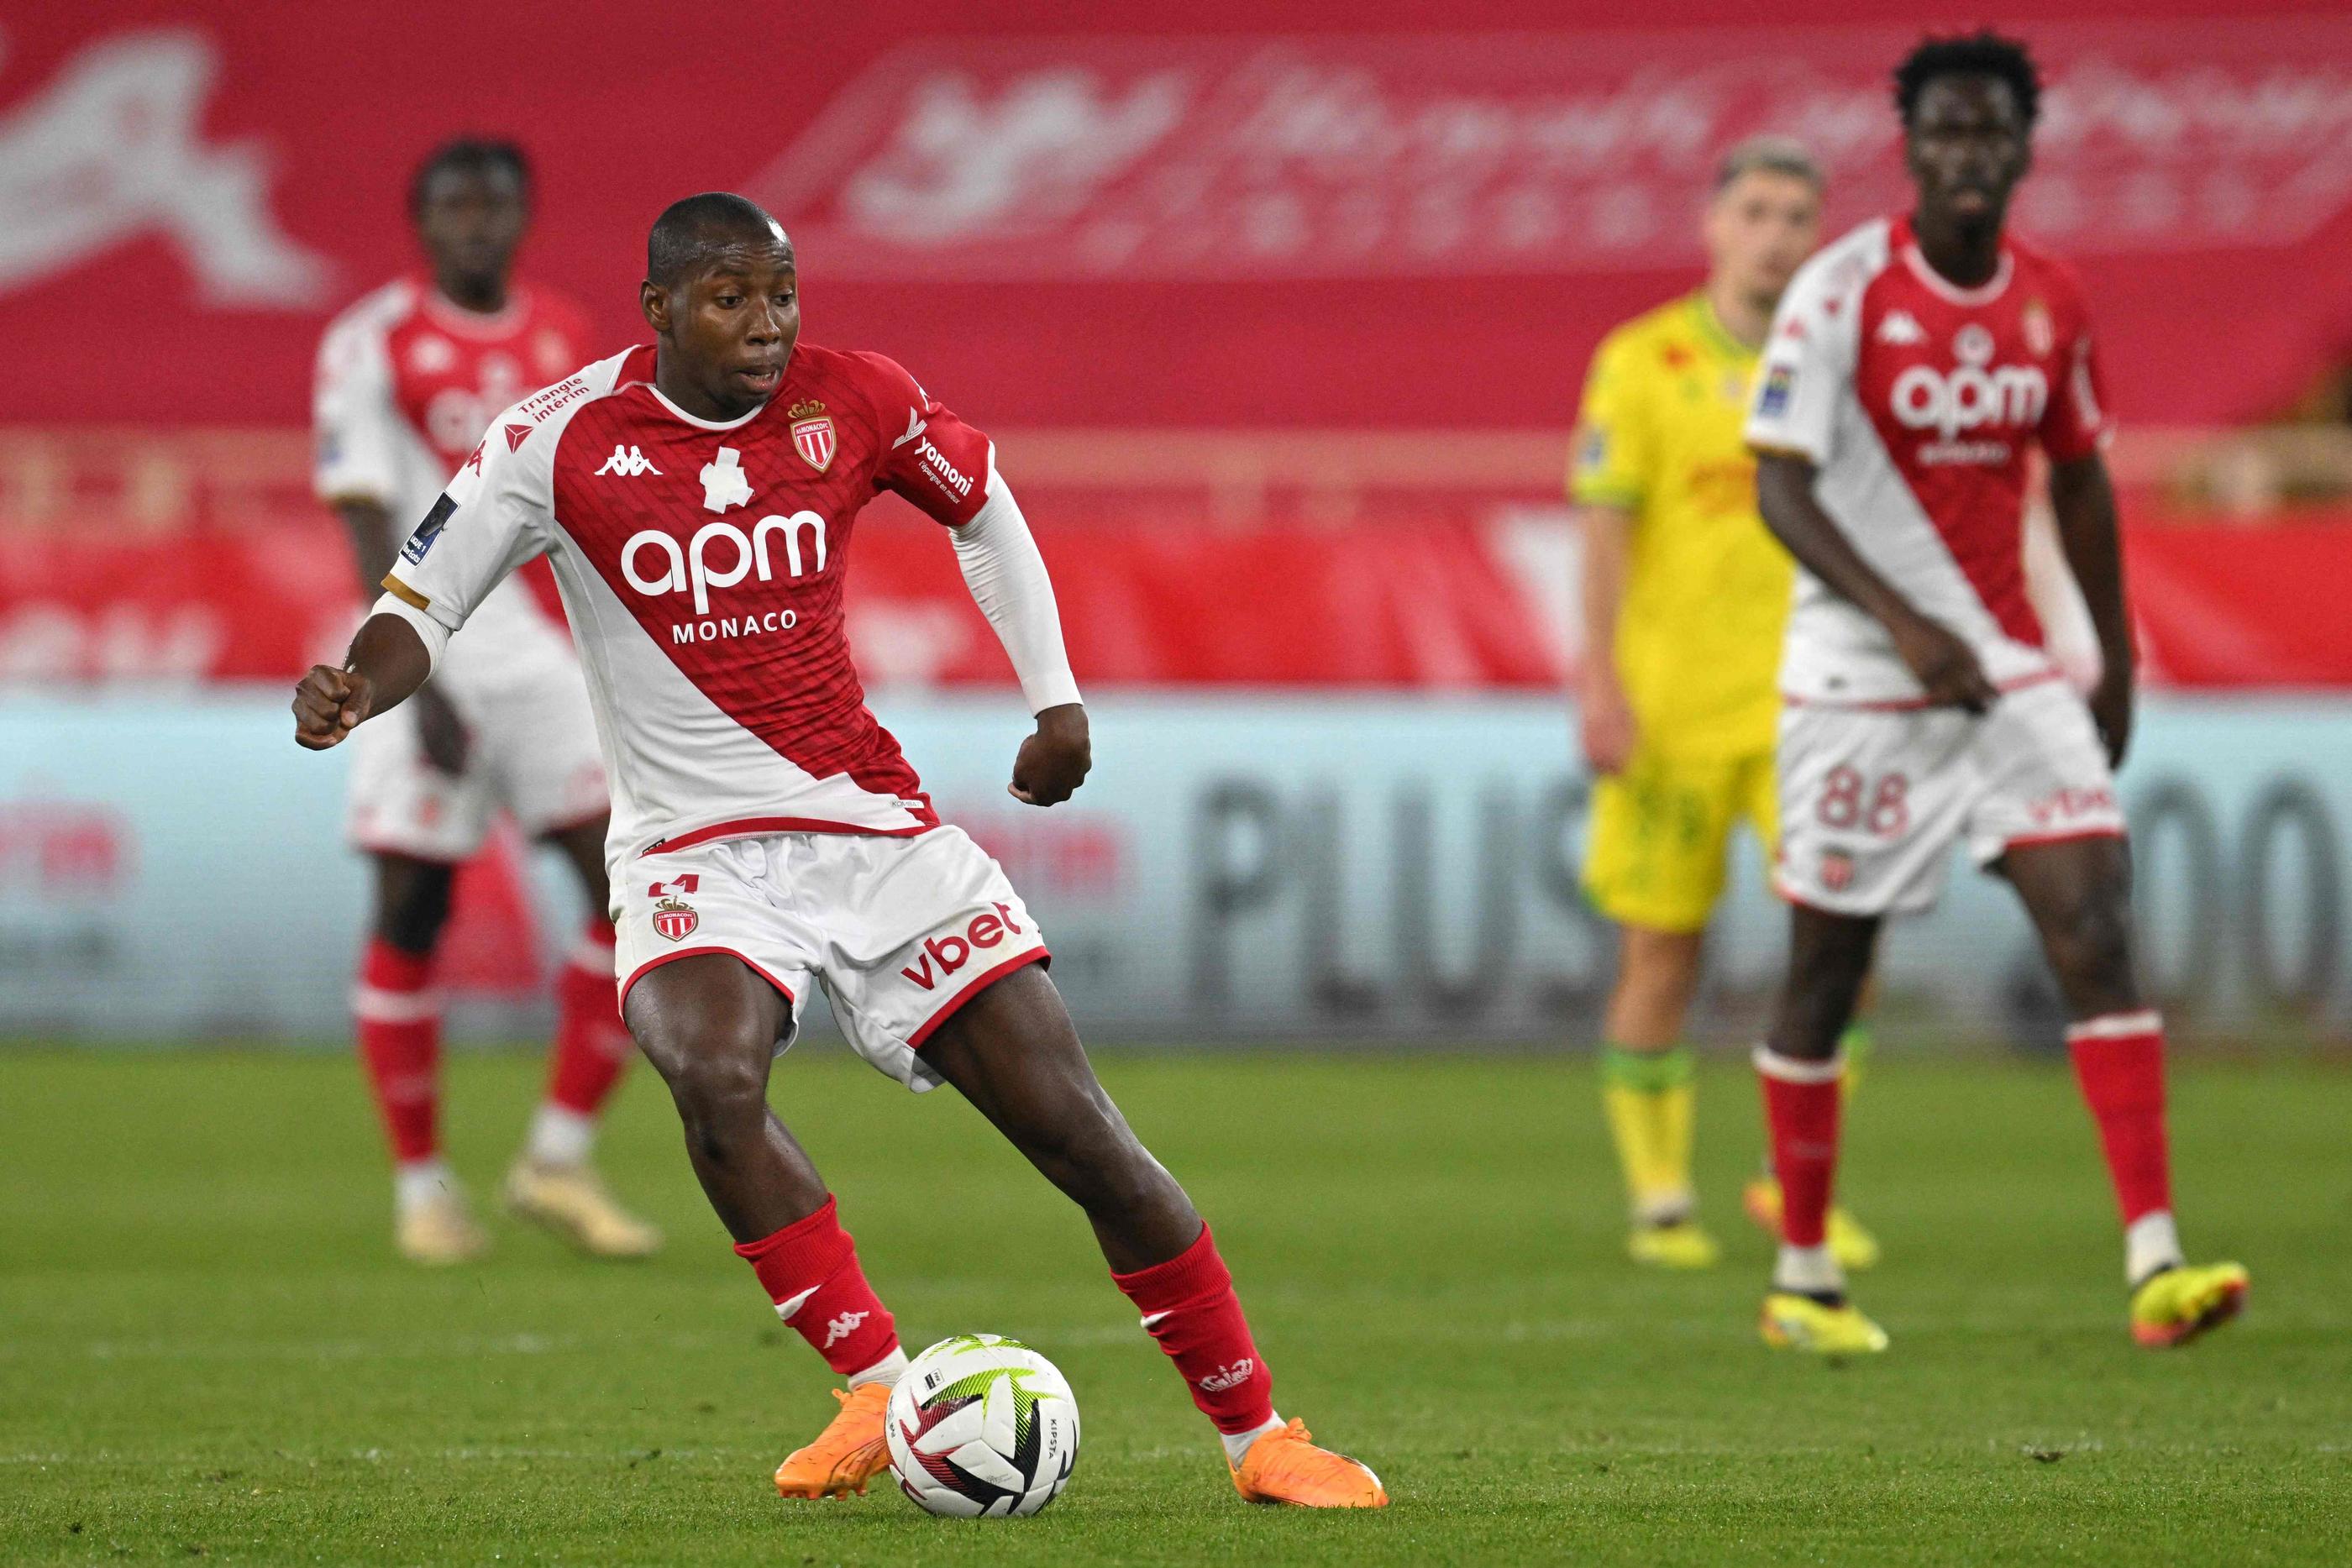 Le Malien s'est fait remarquer non pas pour son but avec Monaco mais pour avoir caché le logo contre l'homophobie sur son maillot. (Photo by Nicolas TUCAT / AFP)